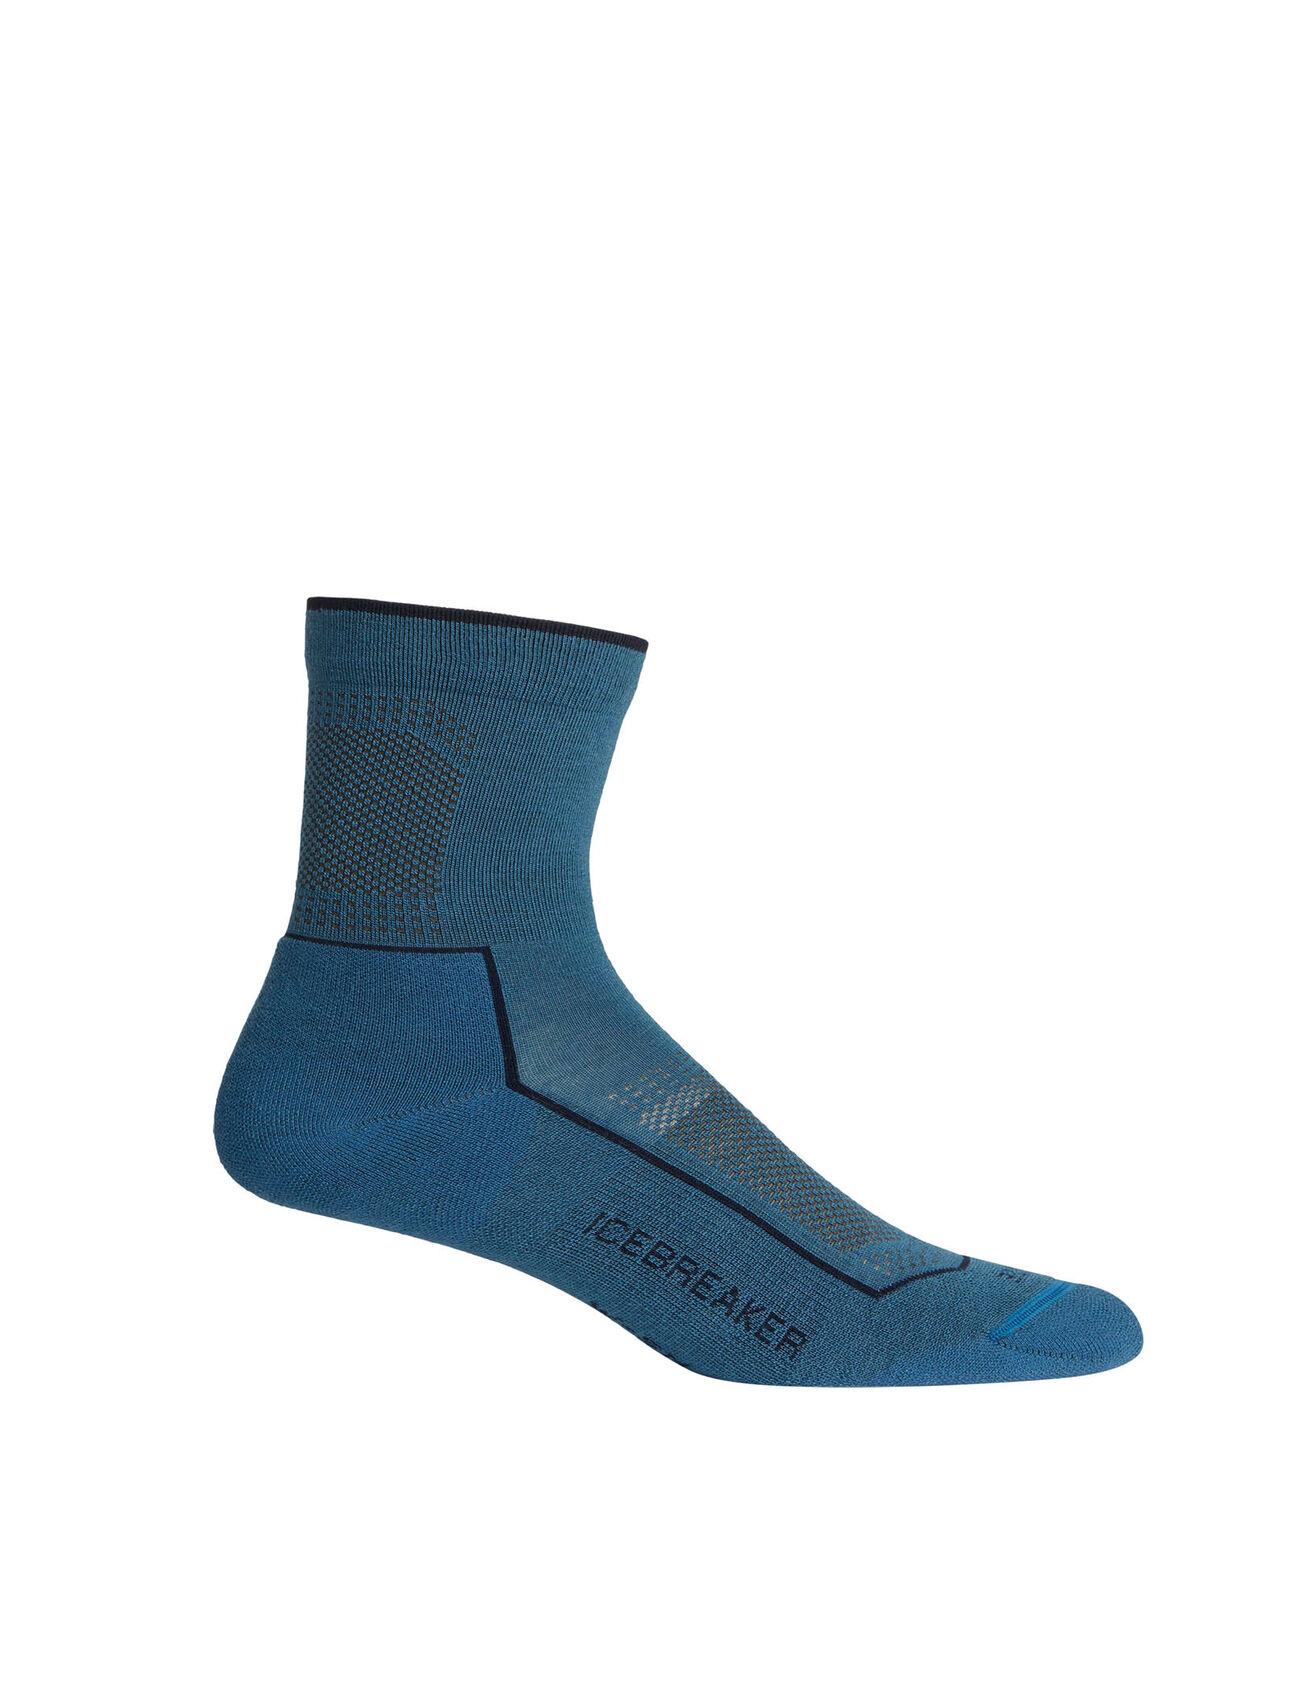 Hike Cool-Lite 3Q halfhoge sokken van merinowolmix